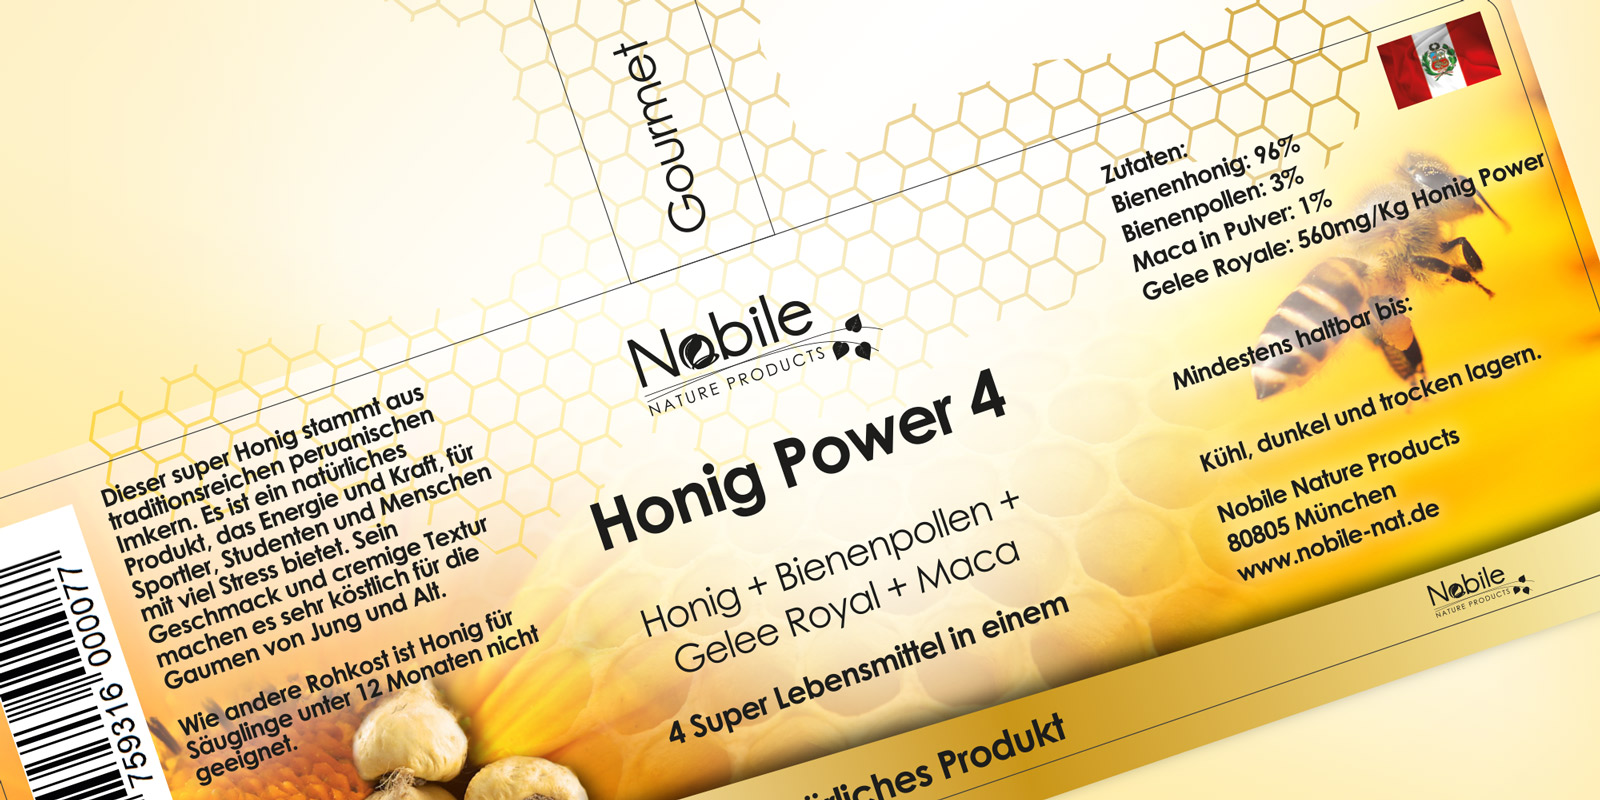 Diseño gráfico y creativo de etiquetas de productos para Miel de la empresa Nobile Nature Products en Alemania